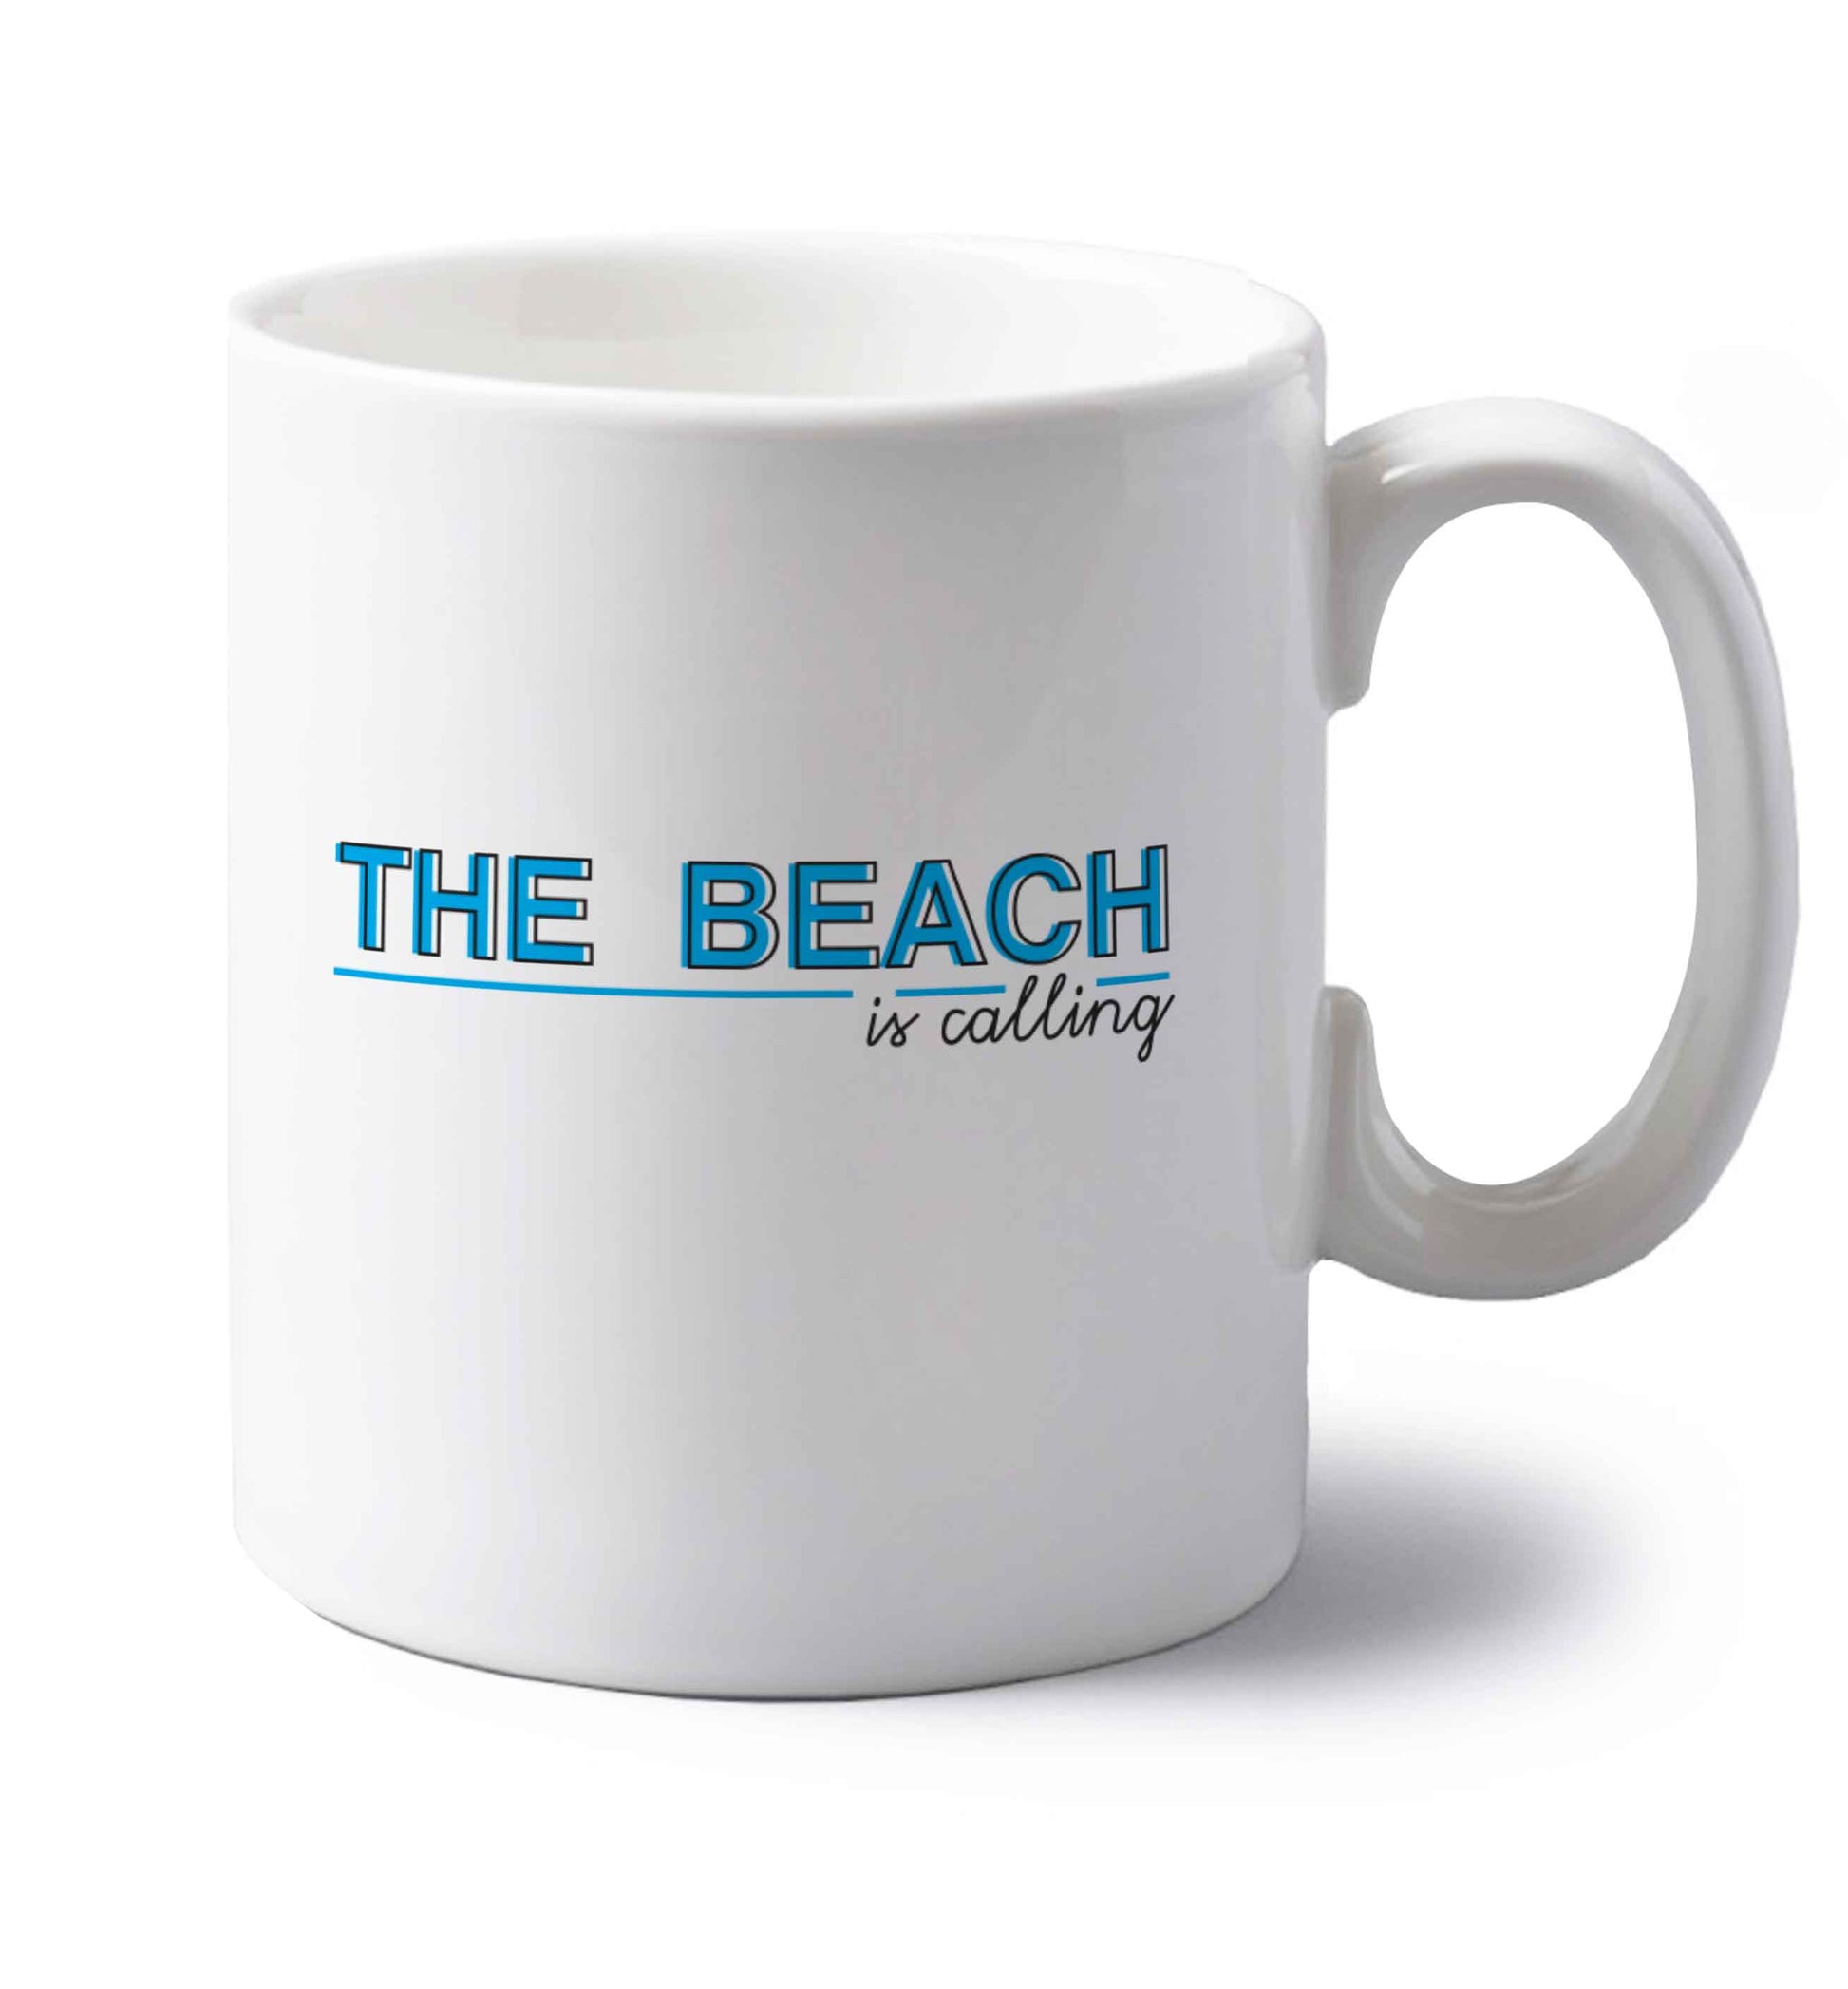 The beach is calling left handed white ceramic mug 